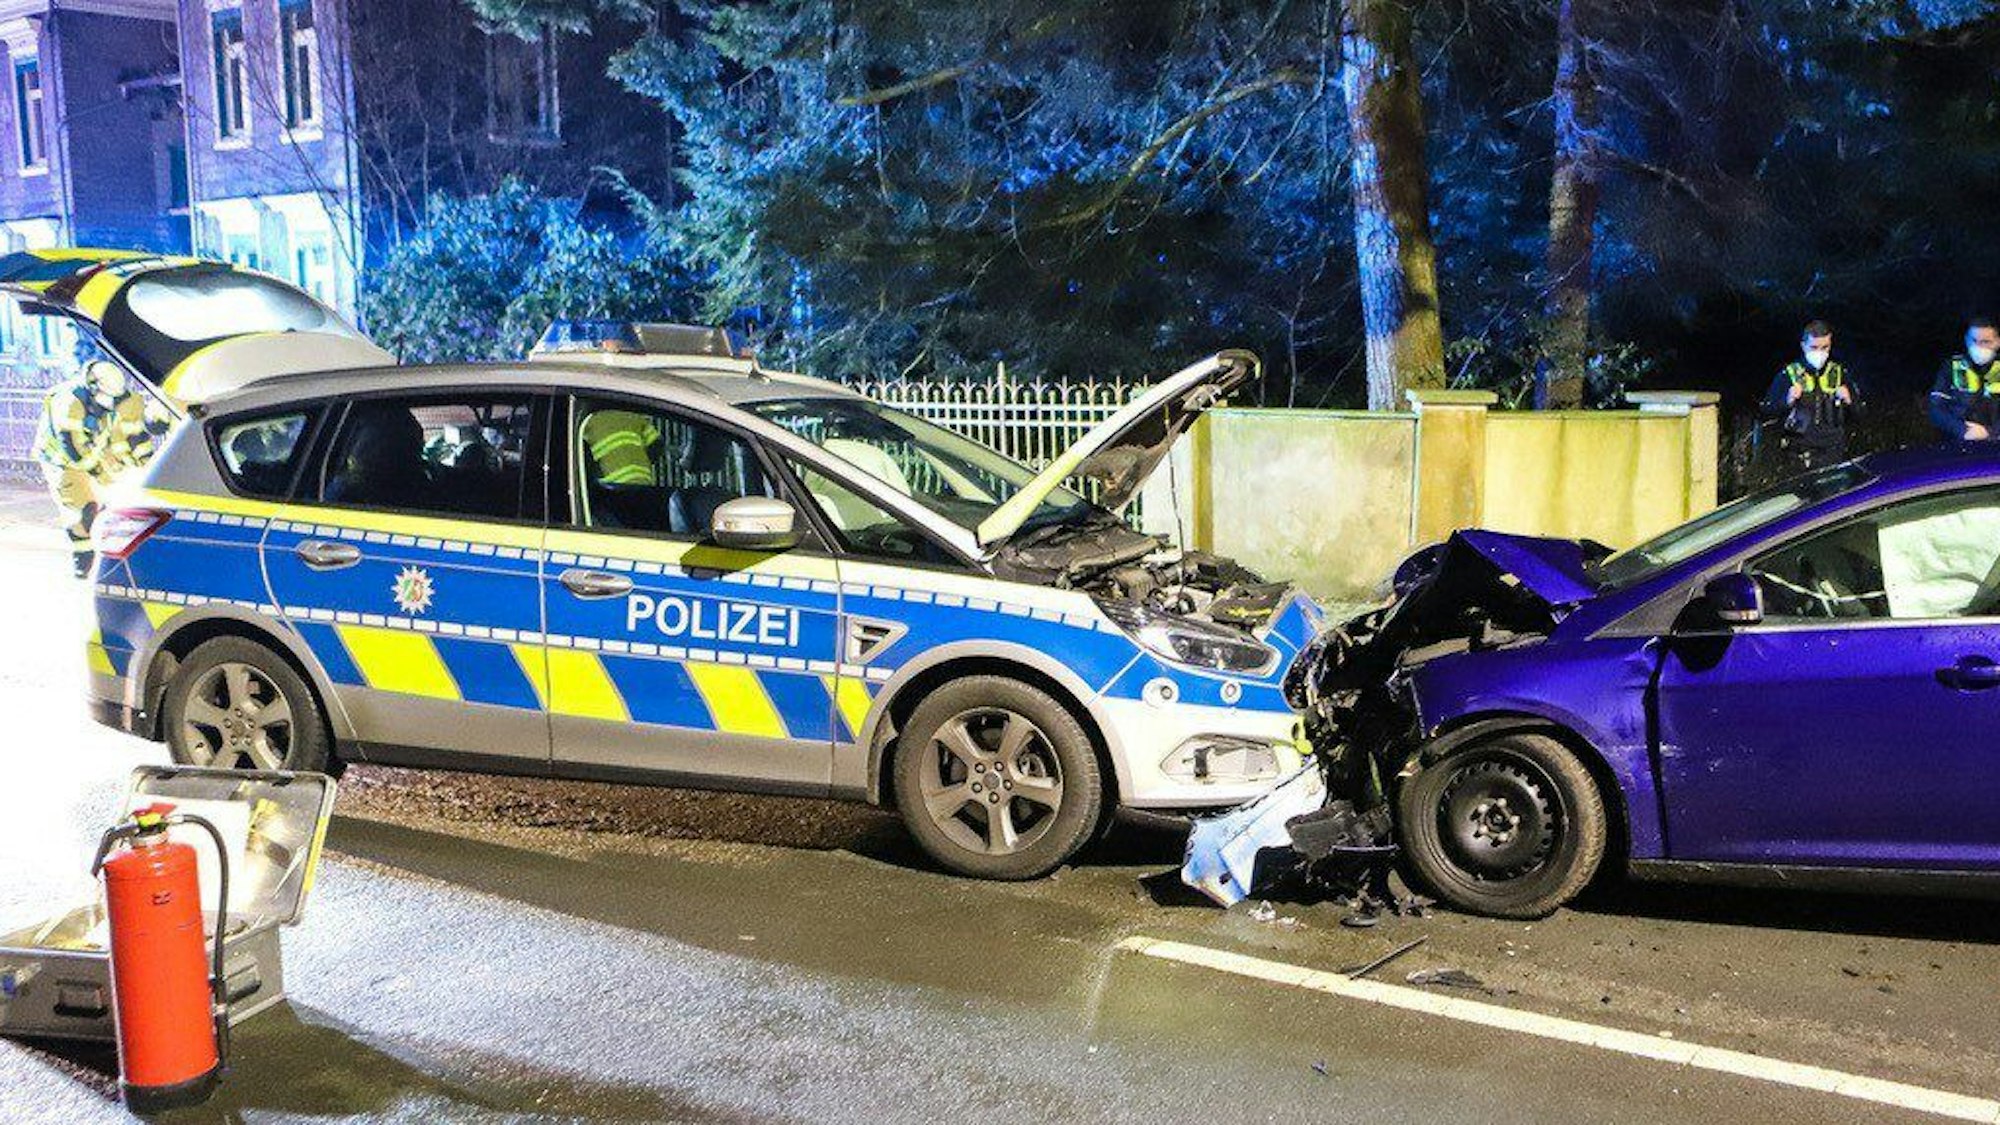 Ein Streifenwagen der Polizei und ein weiteres Auto stehen nach einem Unfall auf einer Straße.